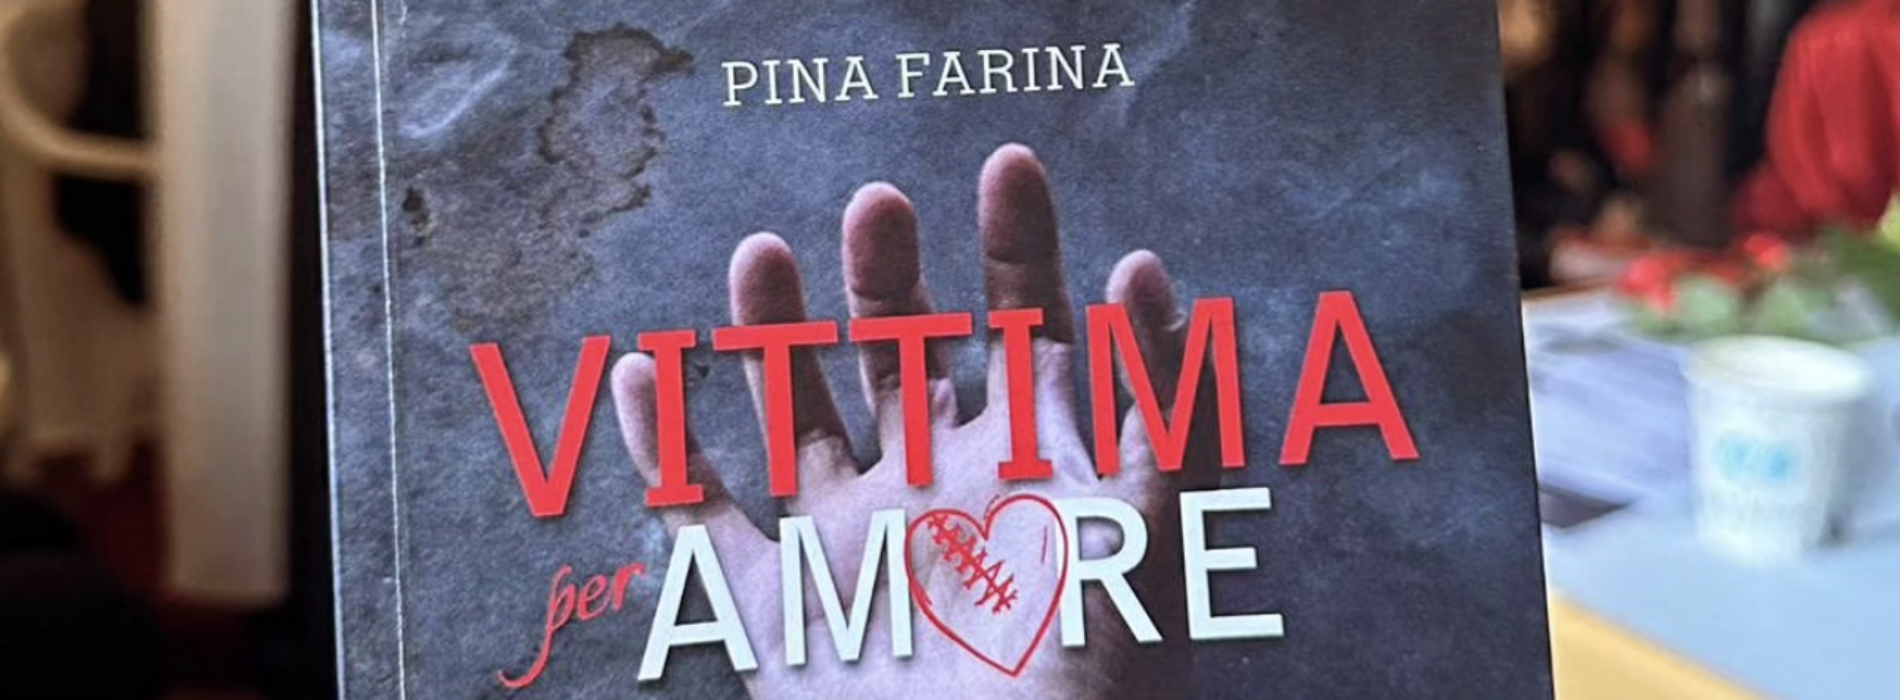 Vittima per Amore, il libro di Pina Farina alla Feltrinelli